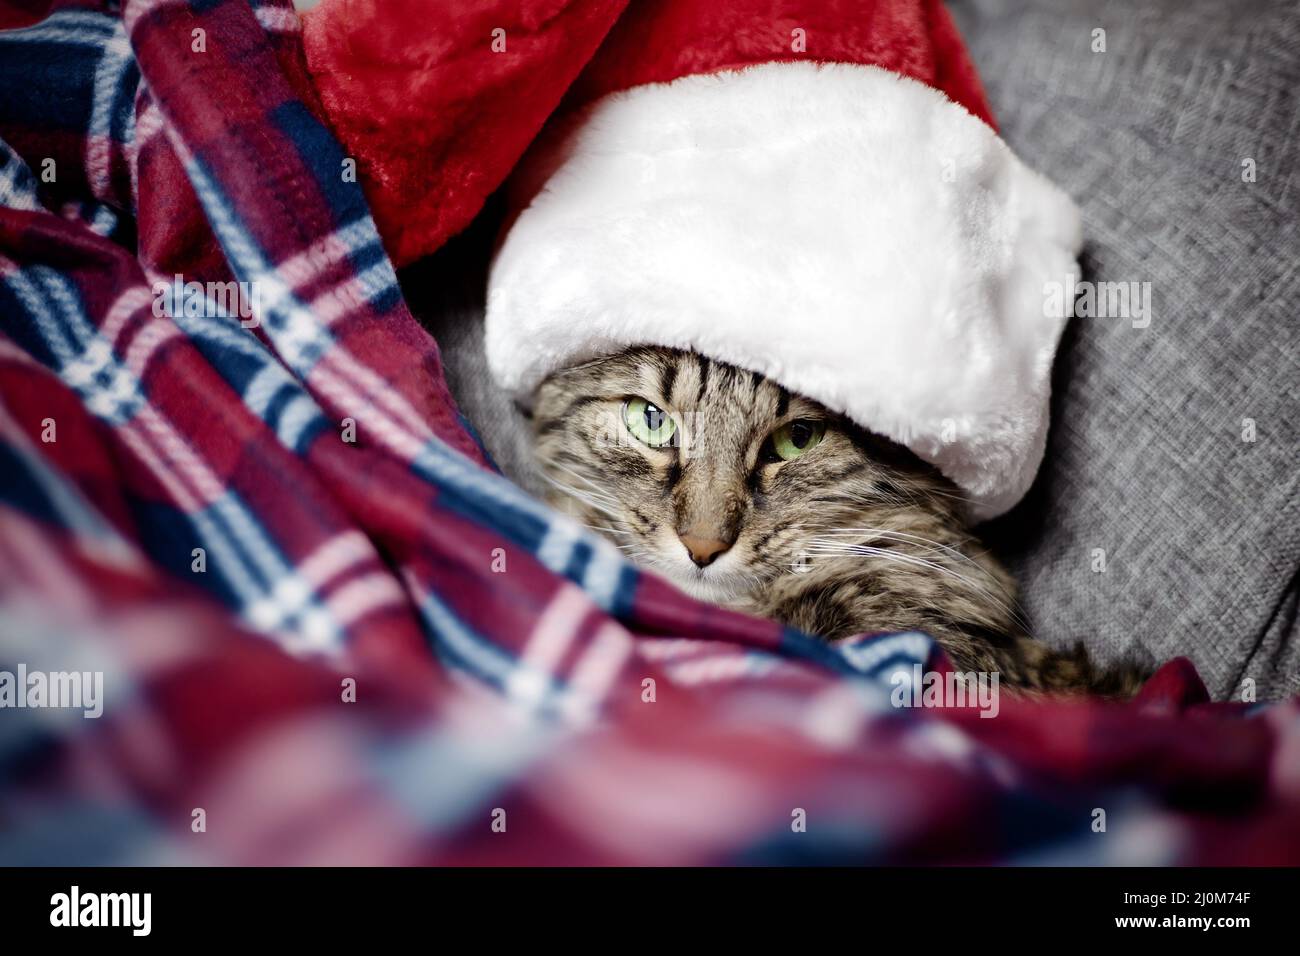 Eine ernsthafte Weihnachtskatze flüchtete vor Weihnachten unter einer Decke. Warten auf Weihnachten. Zusammensetzung von Katze und weihnachten Stockfoto